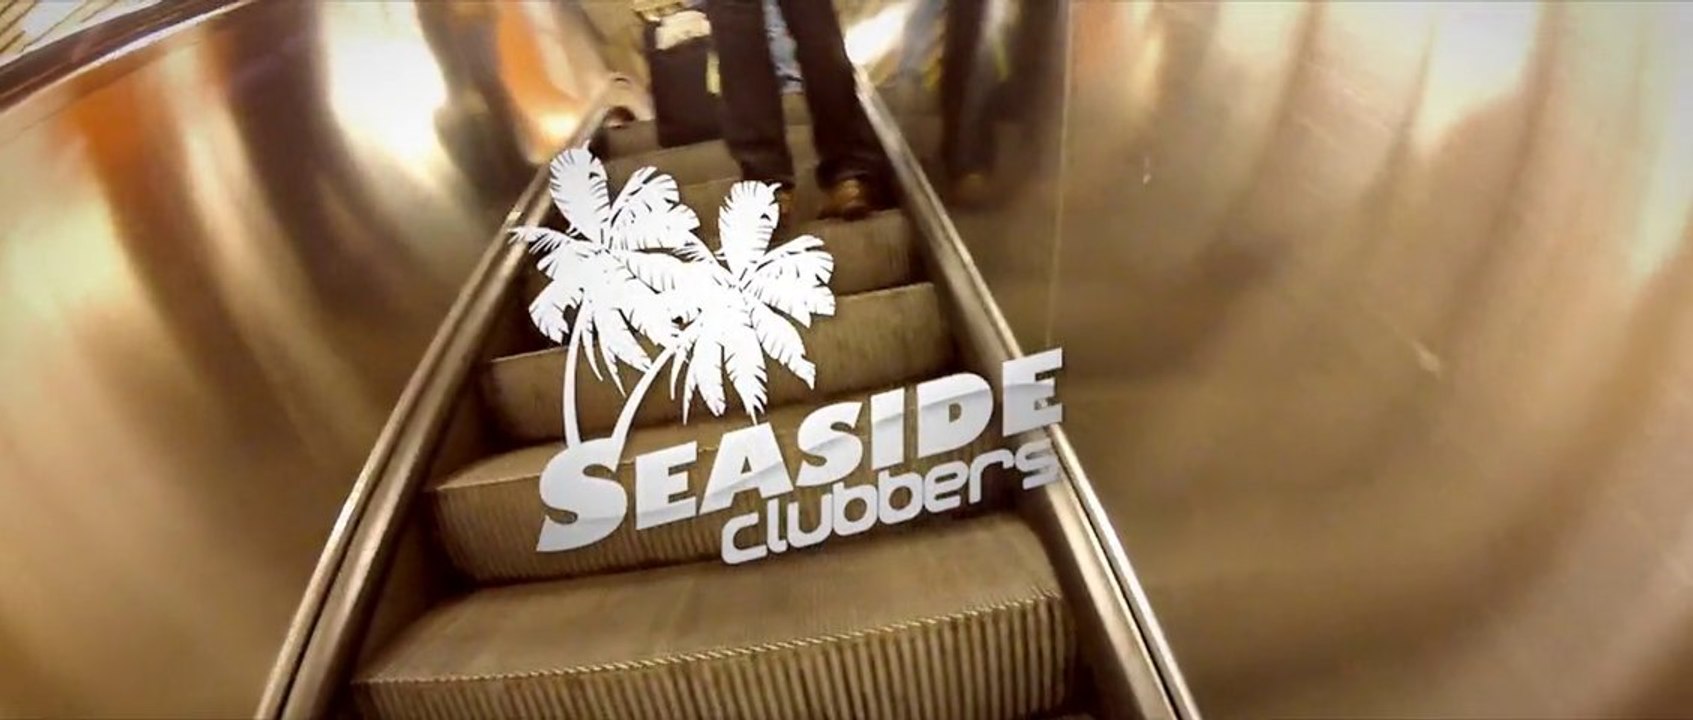 Seaside Clubbers - Türen offen | Proton Records